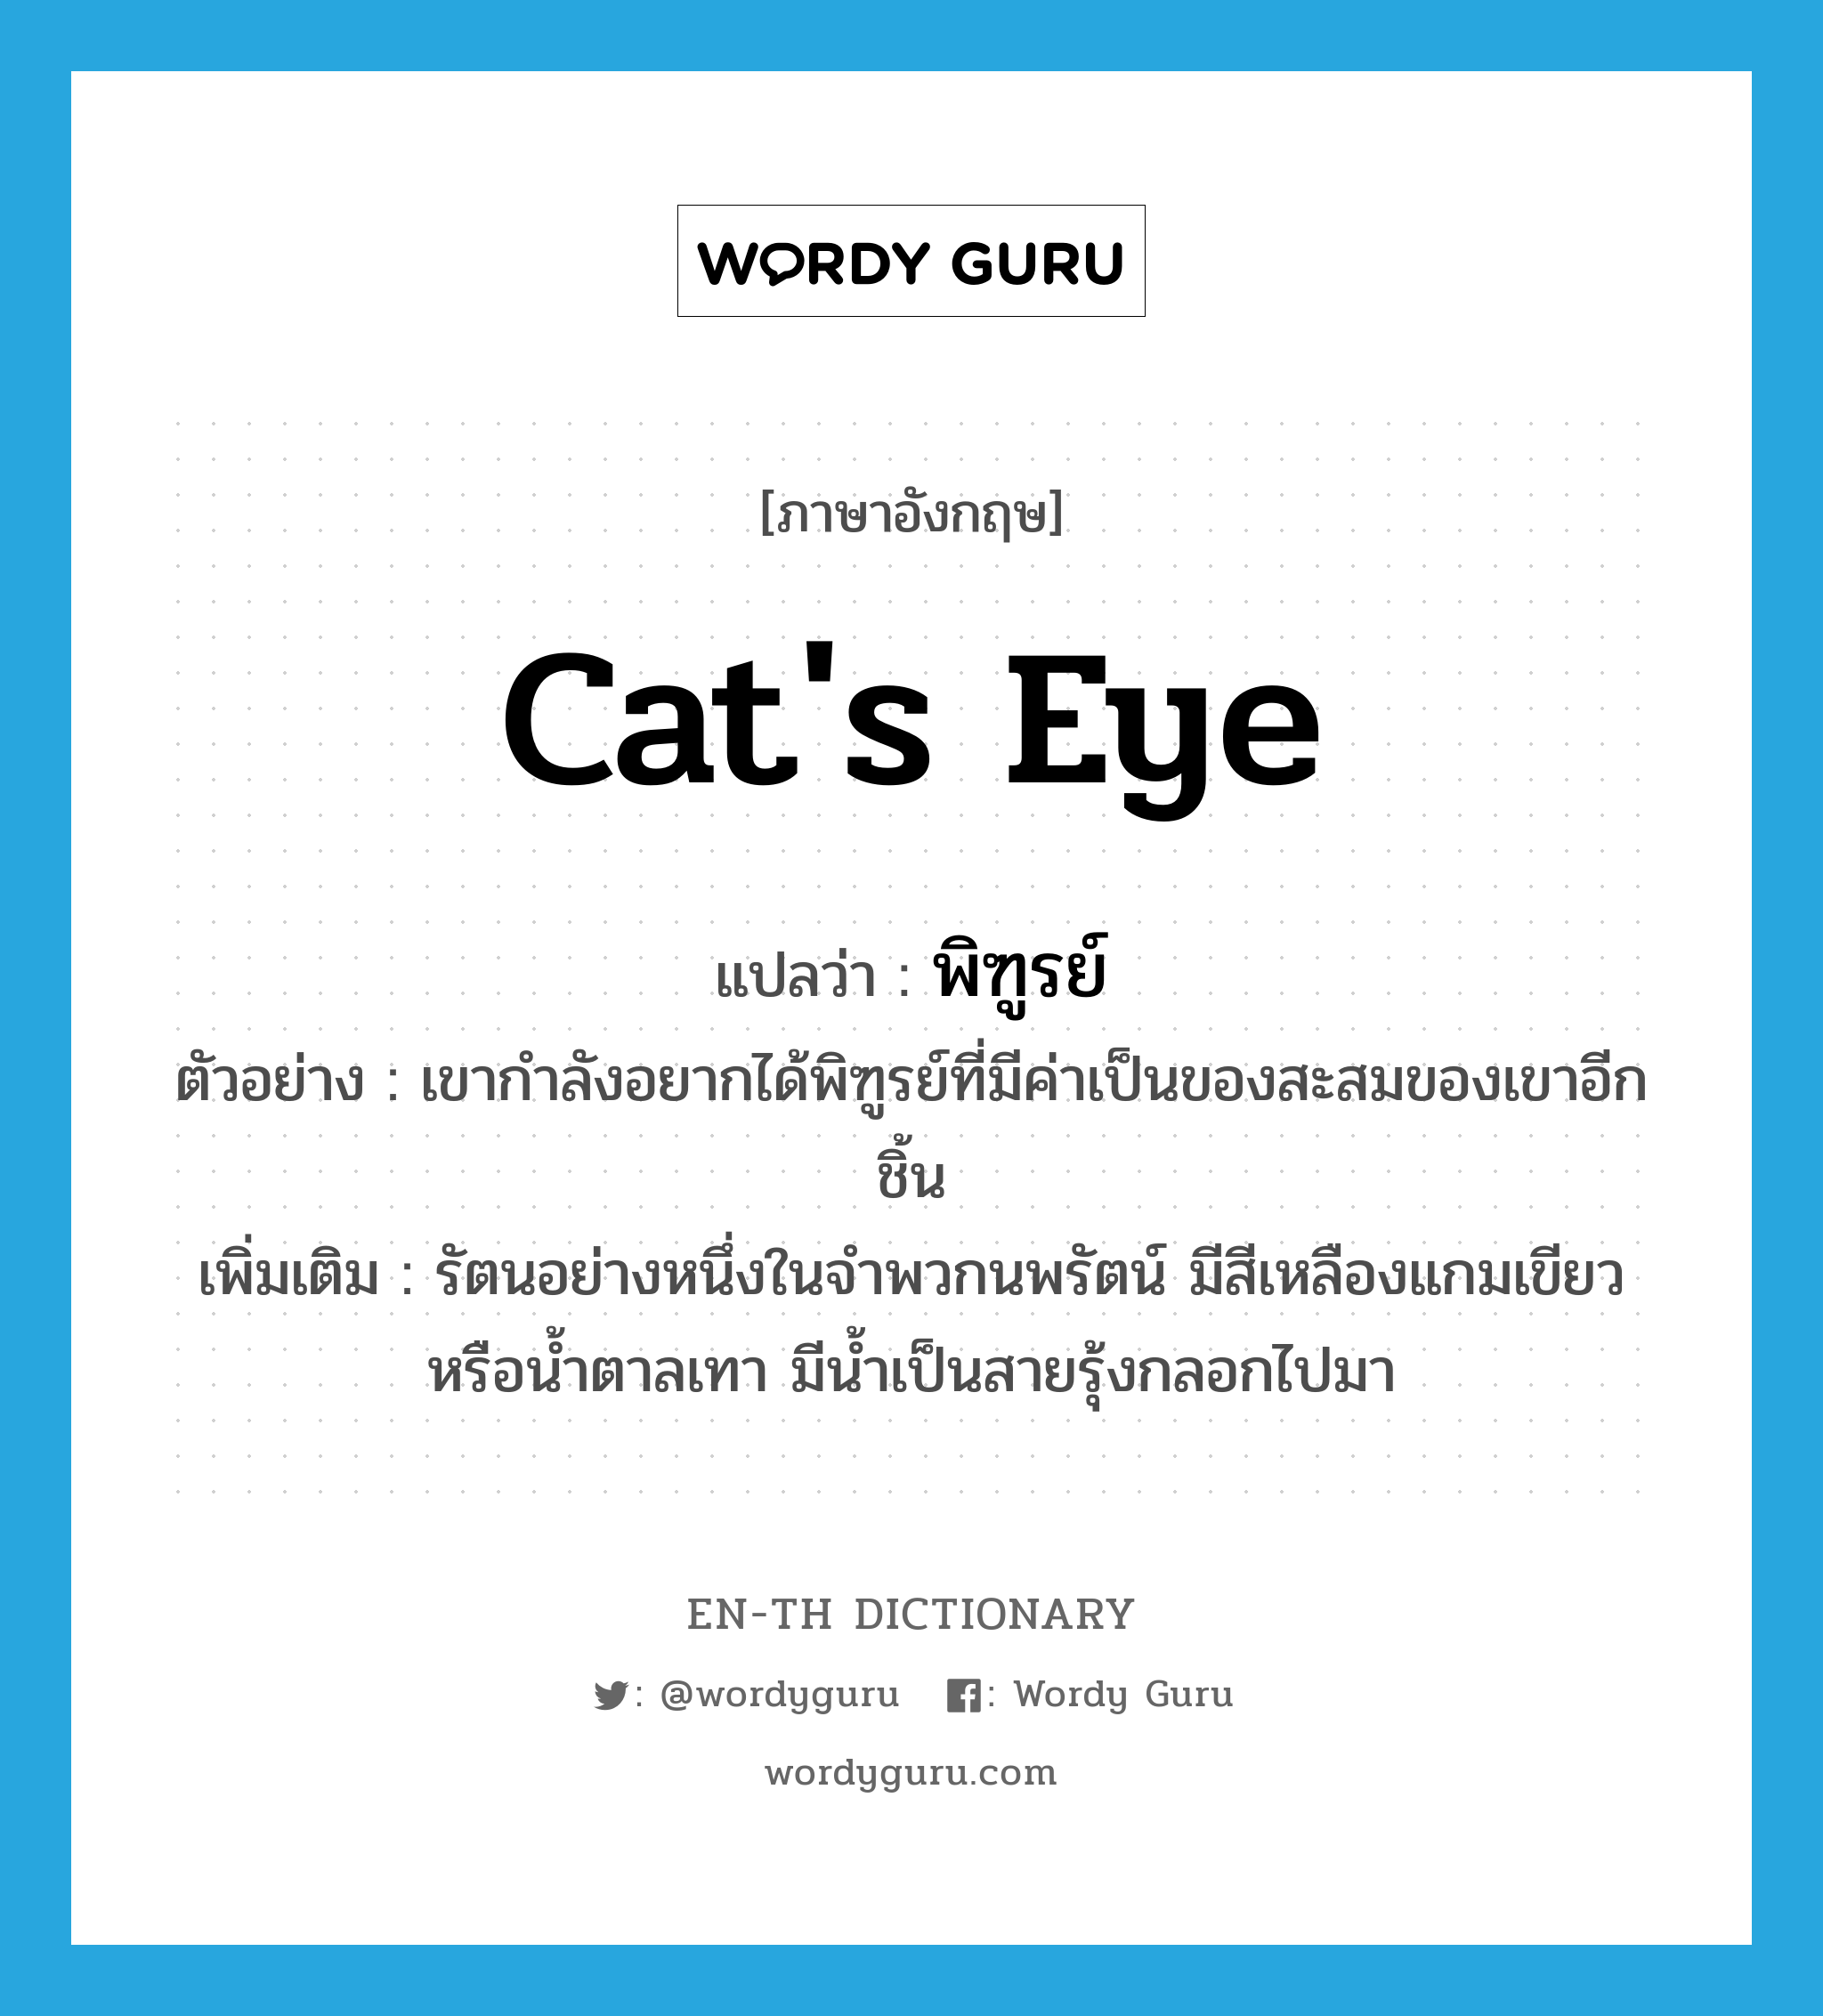 cat's eye แปลว่า?, คำศัพท์ภาษาอังกฤษ cat's eye แปลว่า พิฑูรย์ ประเภท N ตัวอย่าง เขากำลังอยากได้พิฑูรย์ที่มีค่าเป็นของสะสมของเขาอีกชิ้น เพิ่มเติม รัตนอย่างหนึ่งในจำพวกนพรัตน์ มีสีเหลืองแกมเขียวหรือน้ำตาลเทา มีน้ำเป็นสายรุ้งกลอกไปมา หมวด N